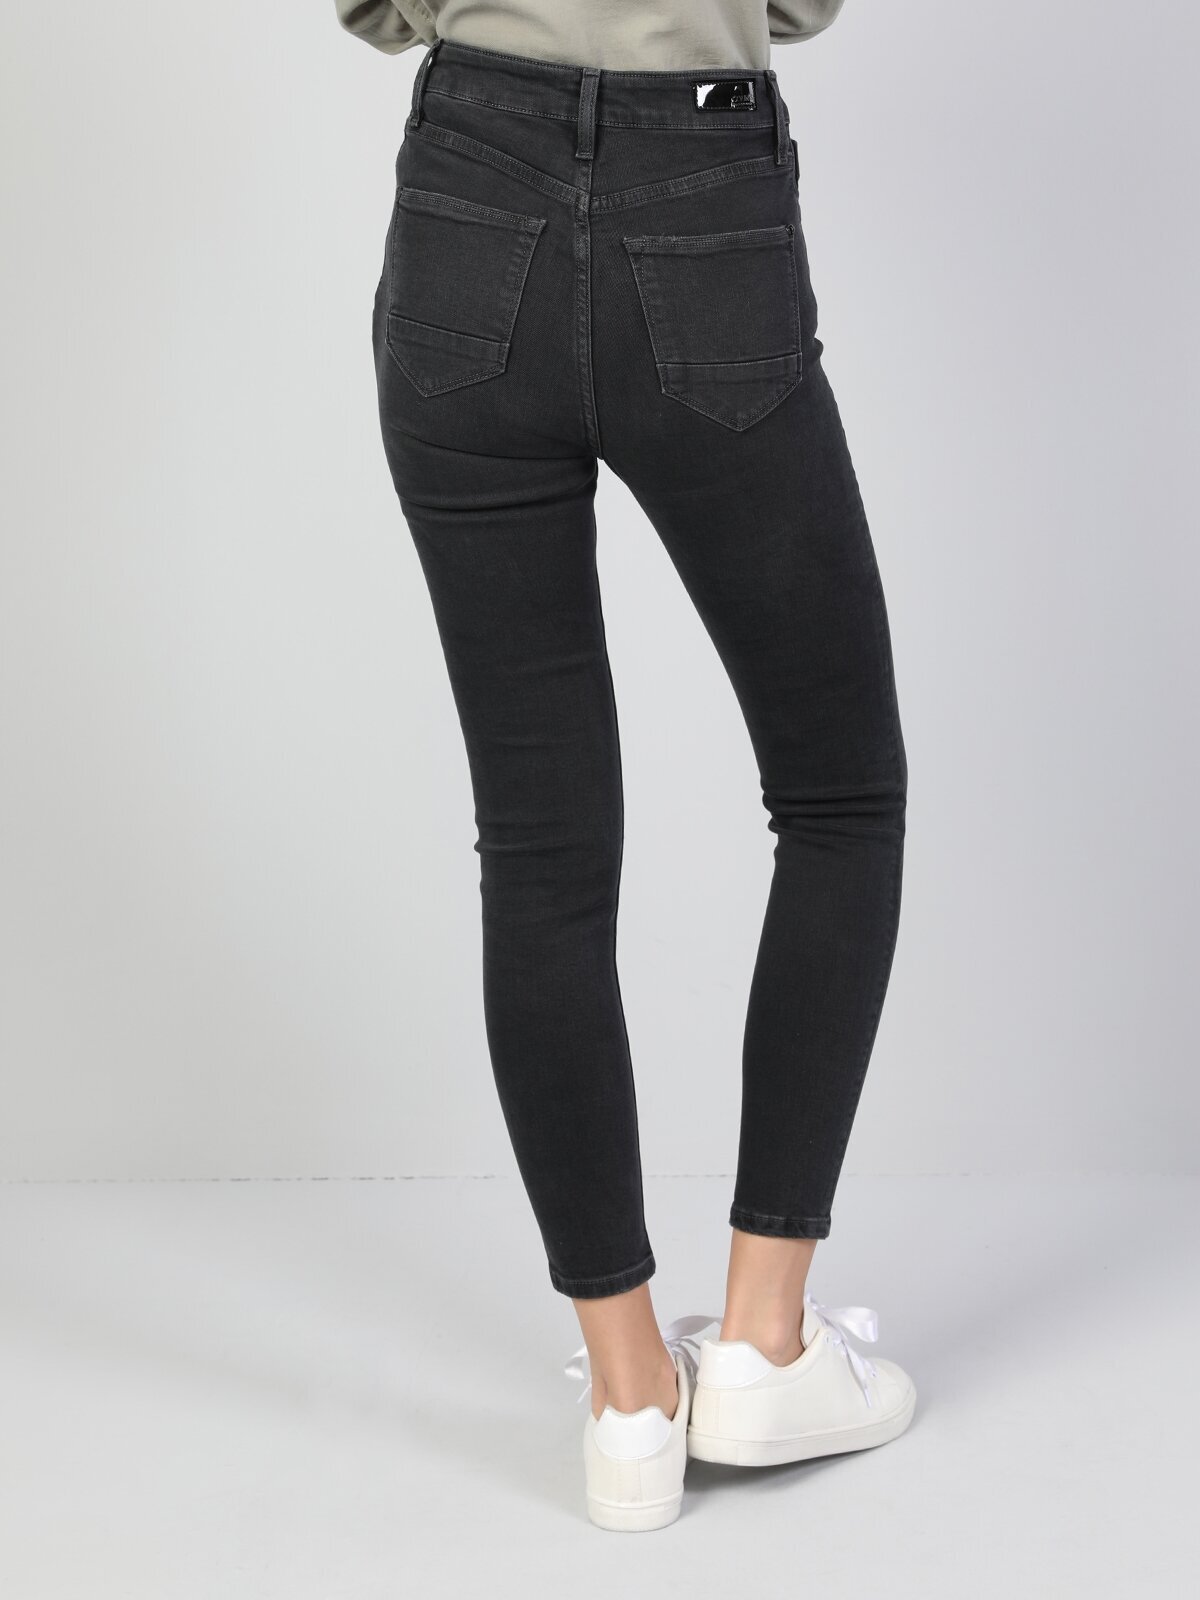 Colins 760 Dıana Yüksek Bel Dar Paça Super Slim Fit Kadın Jean Pantolon. 2